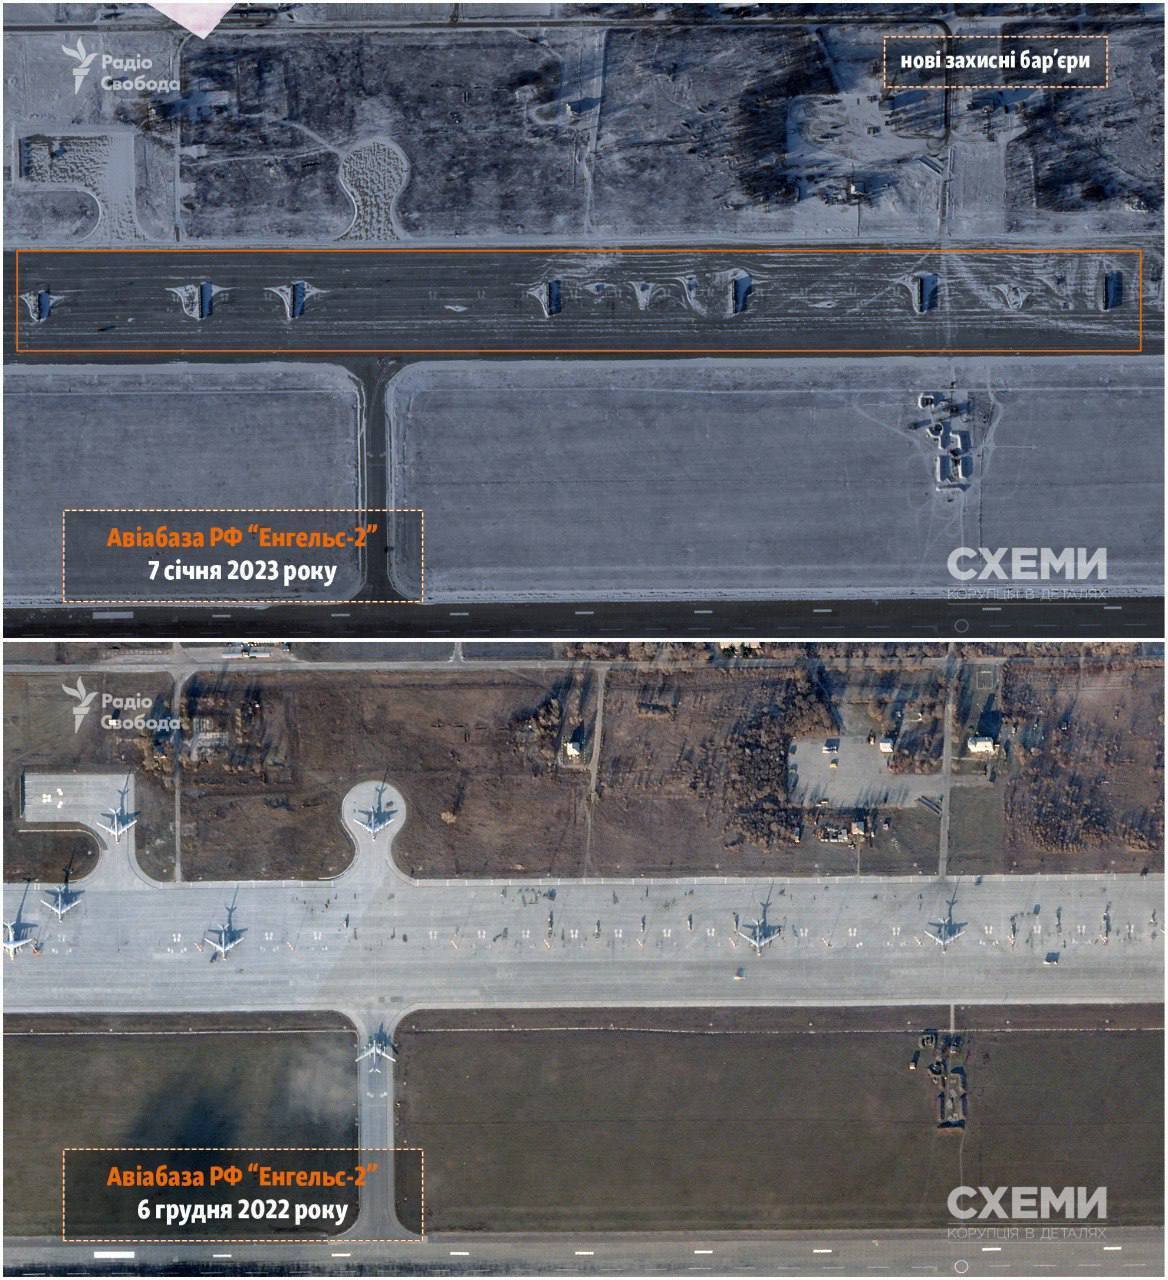 На аеродромі "Енгельс-2" після "бавовни" встановили захисні бар’єри та вивели частину боєздатних літаків. Супутникові фото